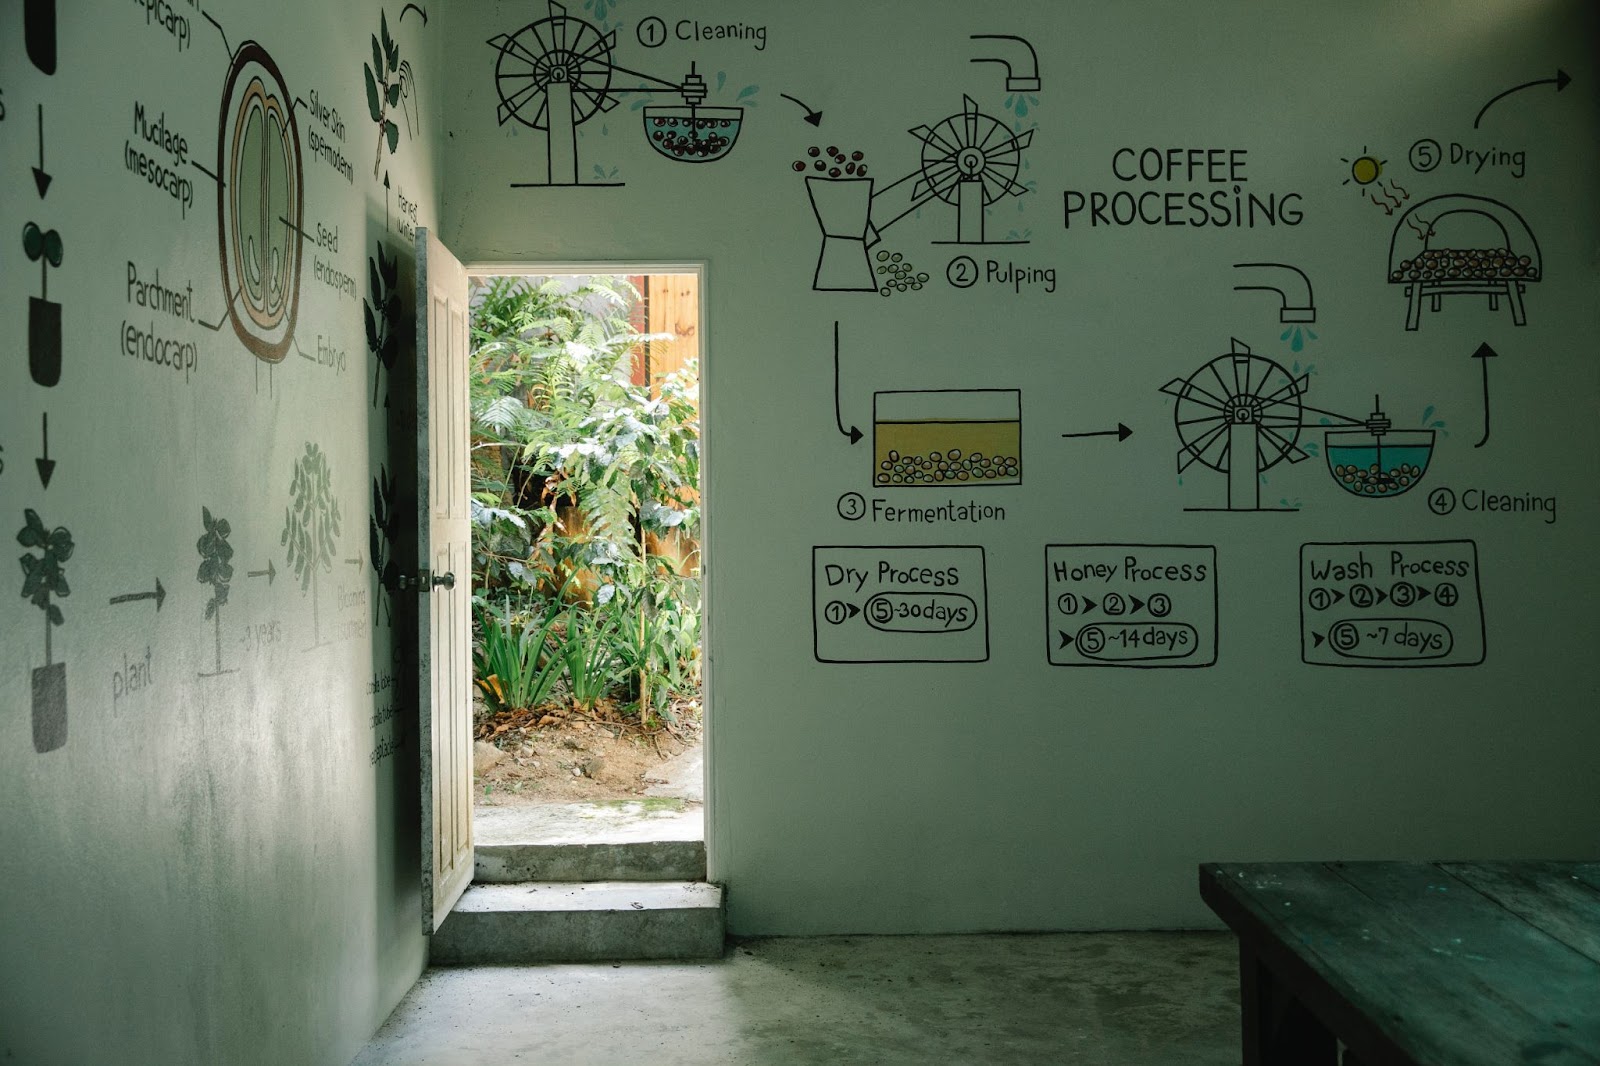 cofee processing explanation